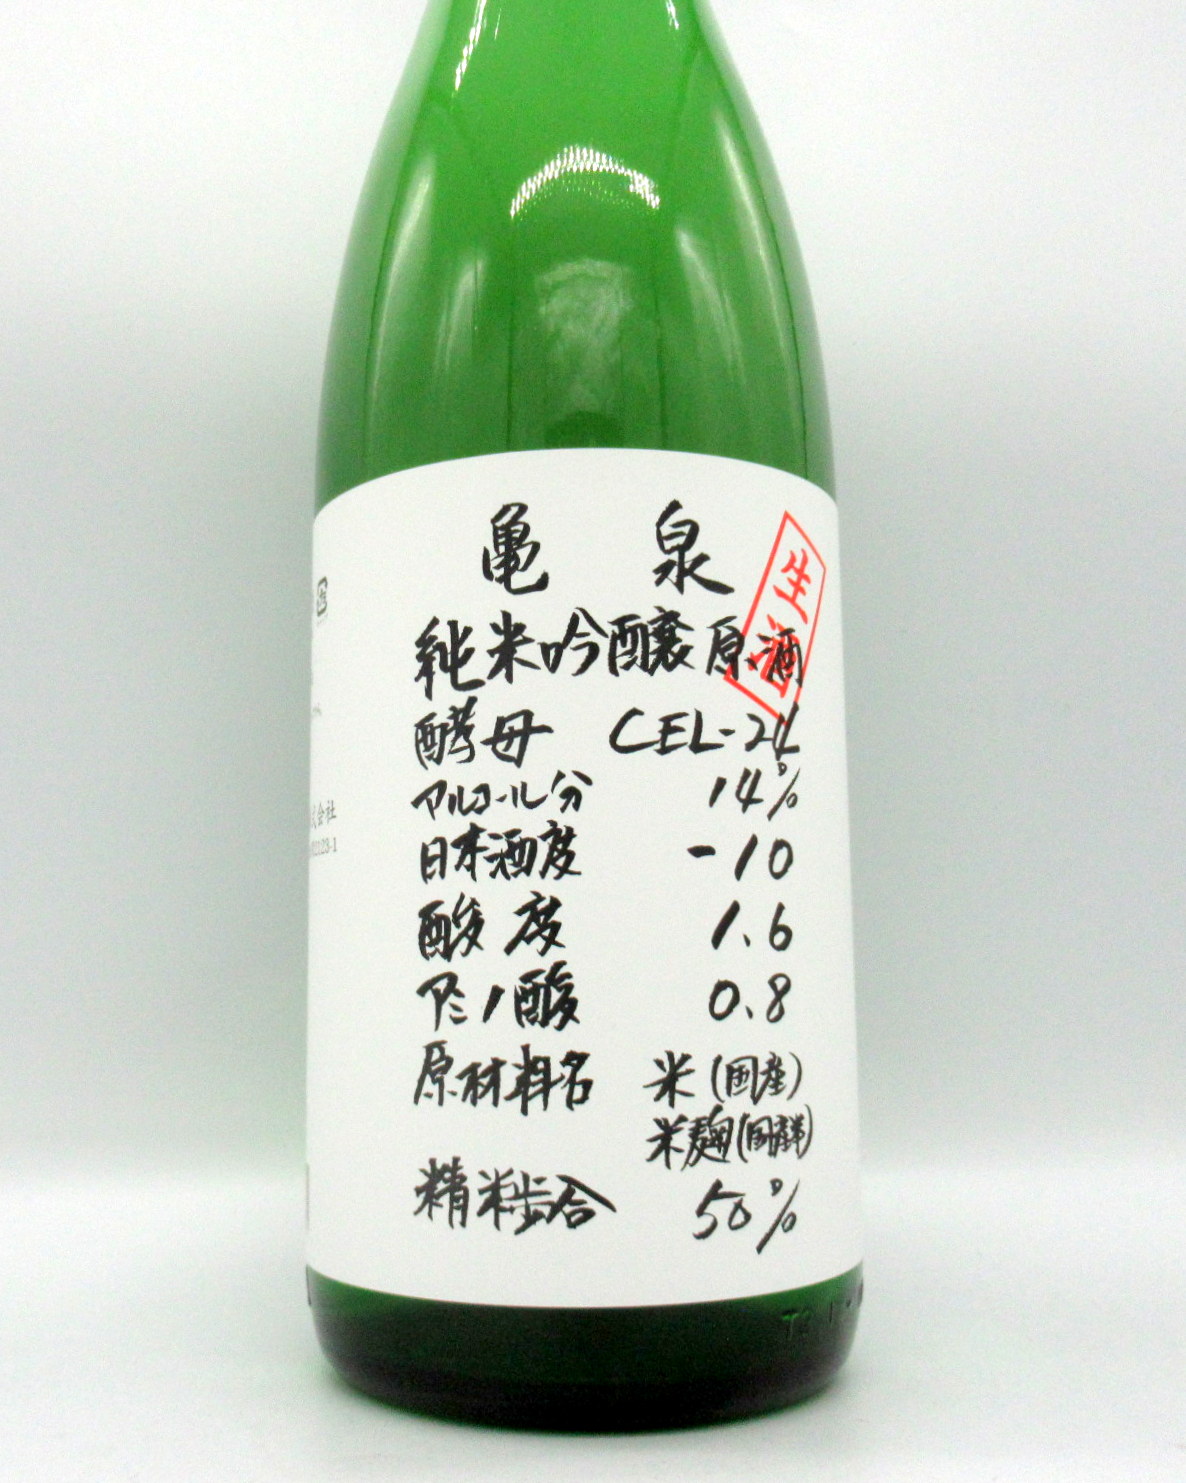 日本酒 亀泉 純米吟醸生原酒 CEL-24 1800ml − 亀泉酒造